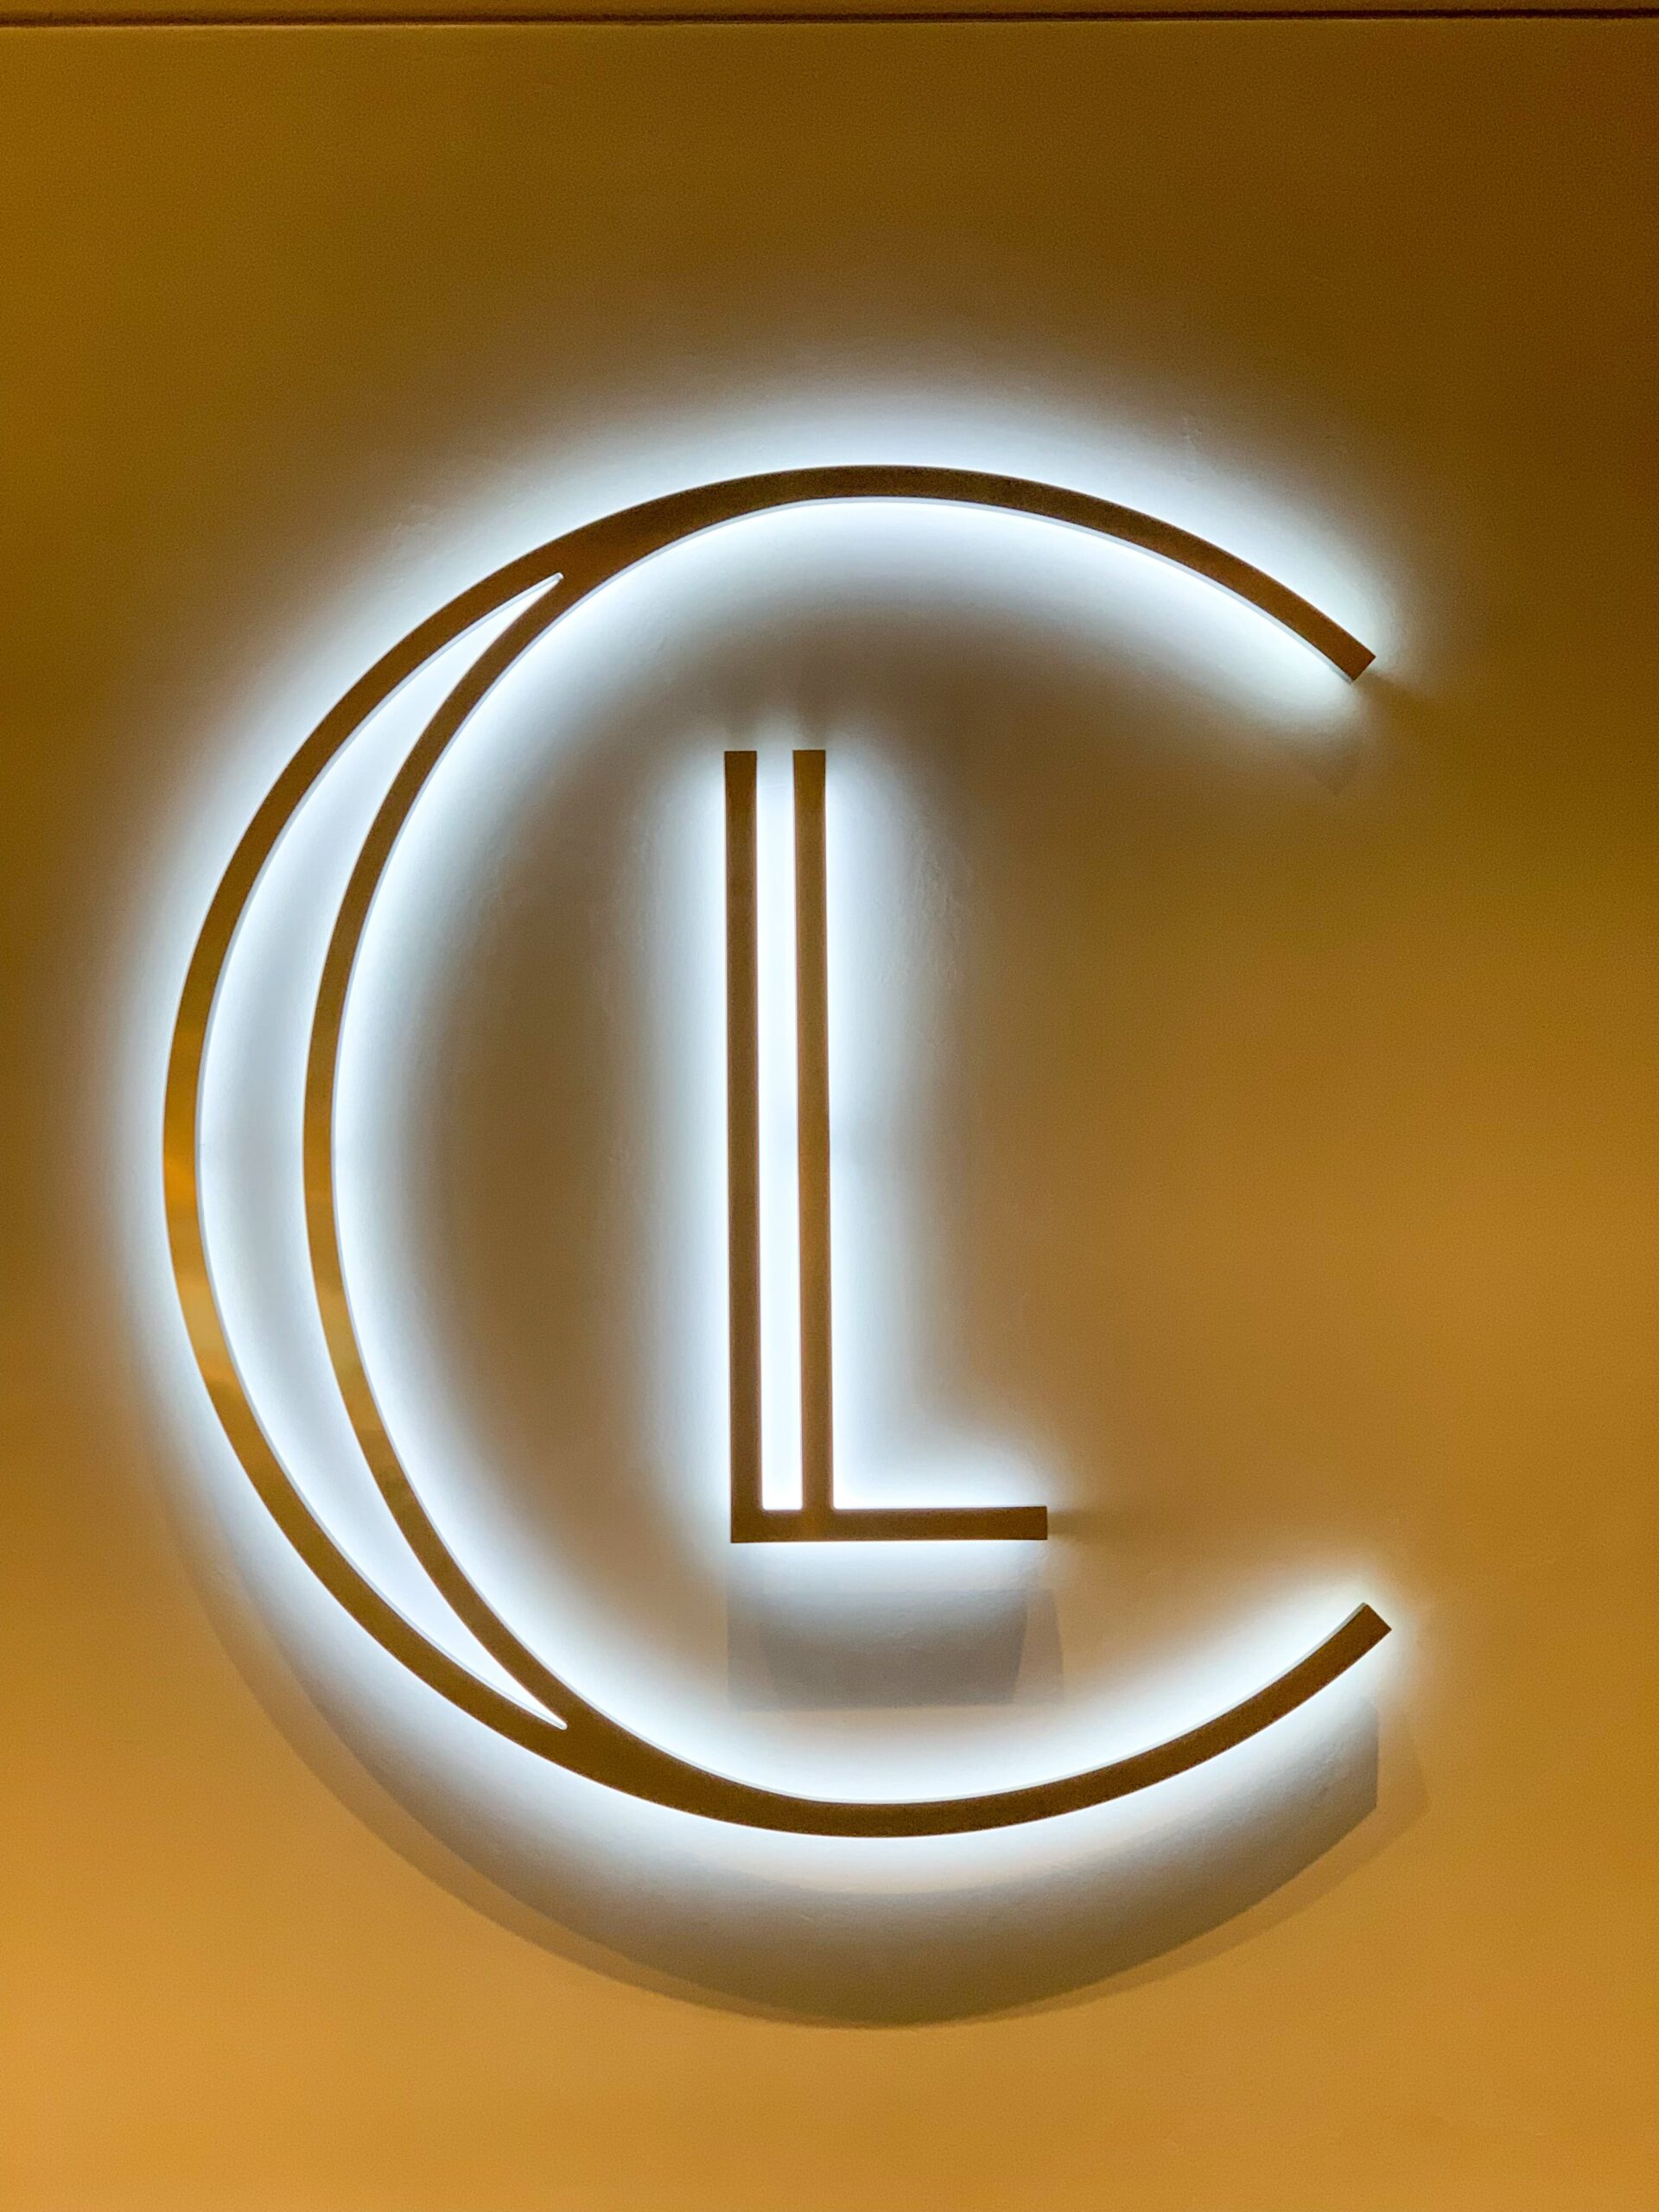 Legacy Club logo sign 